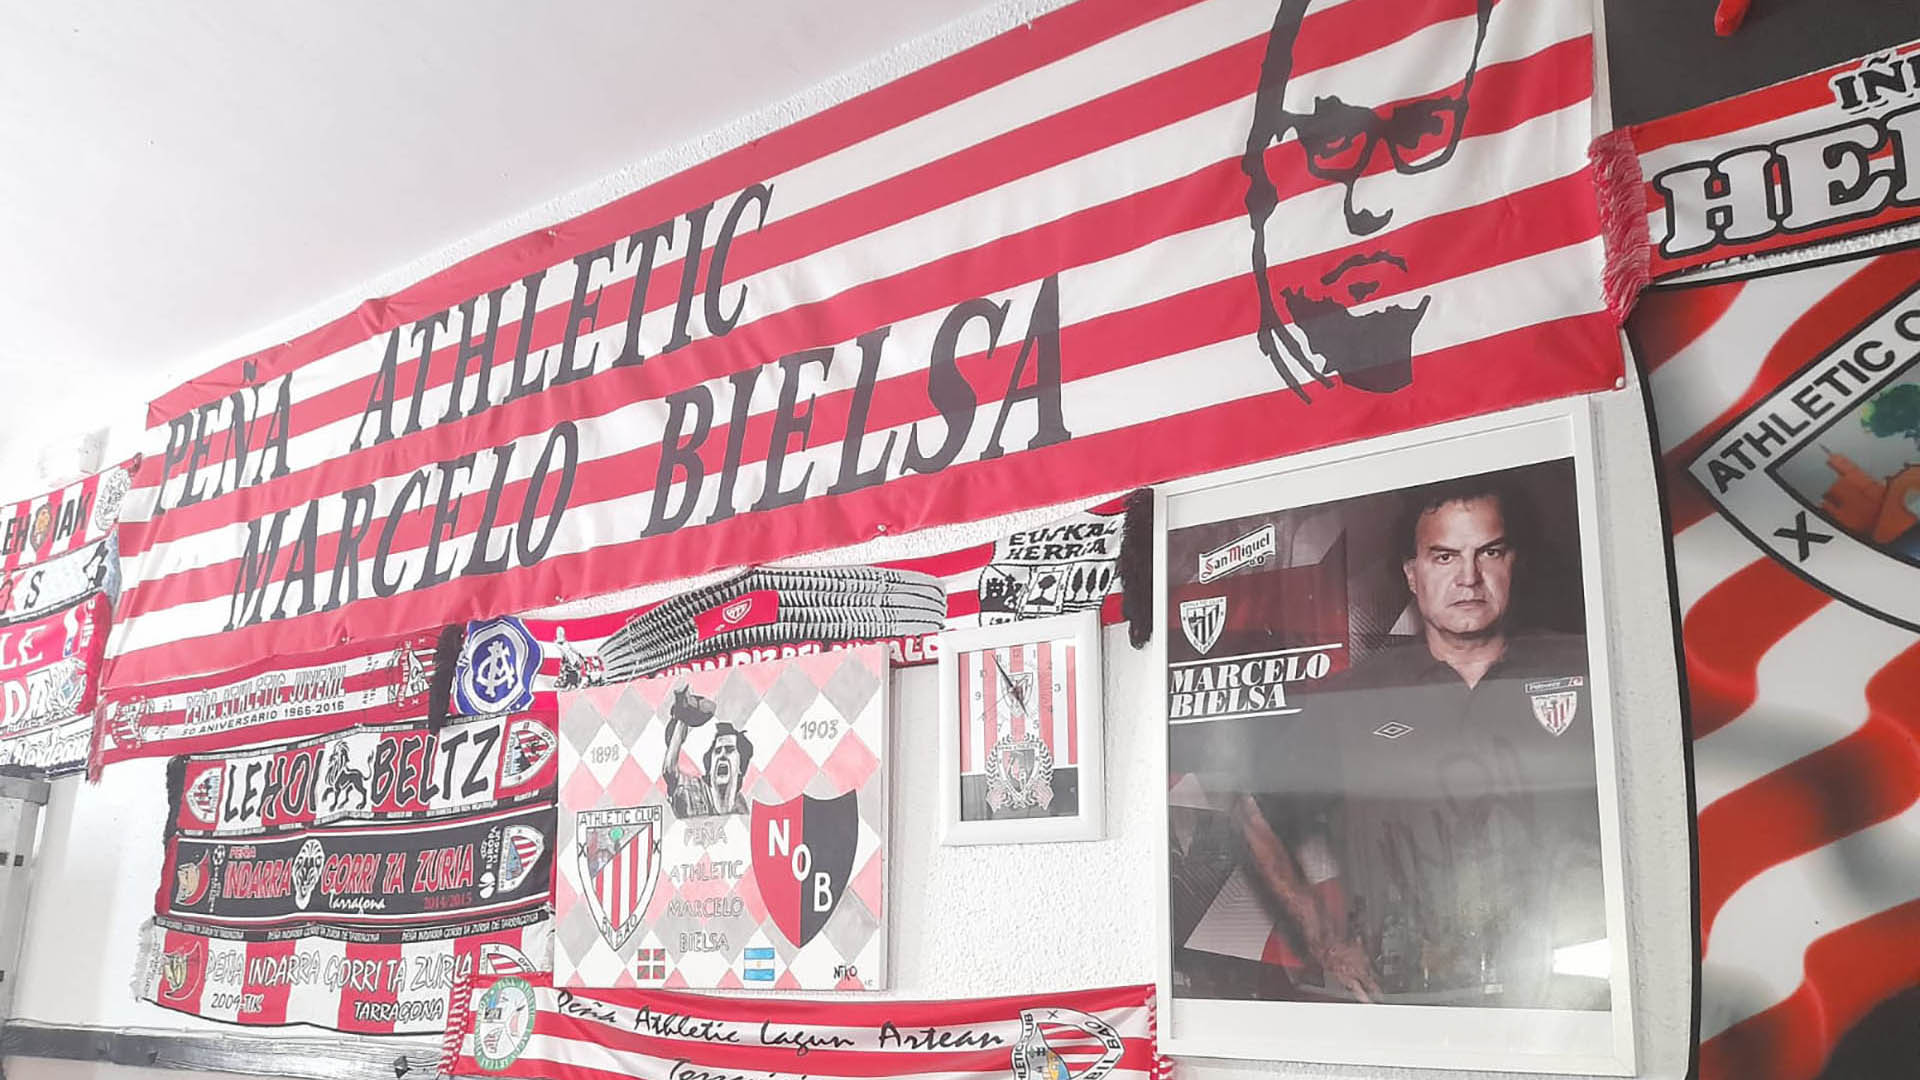 La peña del Athletic Bilbao con el nombre de Bielsa que funciona en un bar y debió cumplir una regla innegociable del argentino: “Somos los locos del Loco”